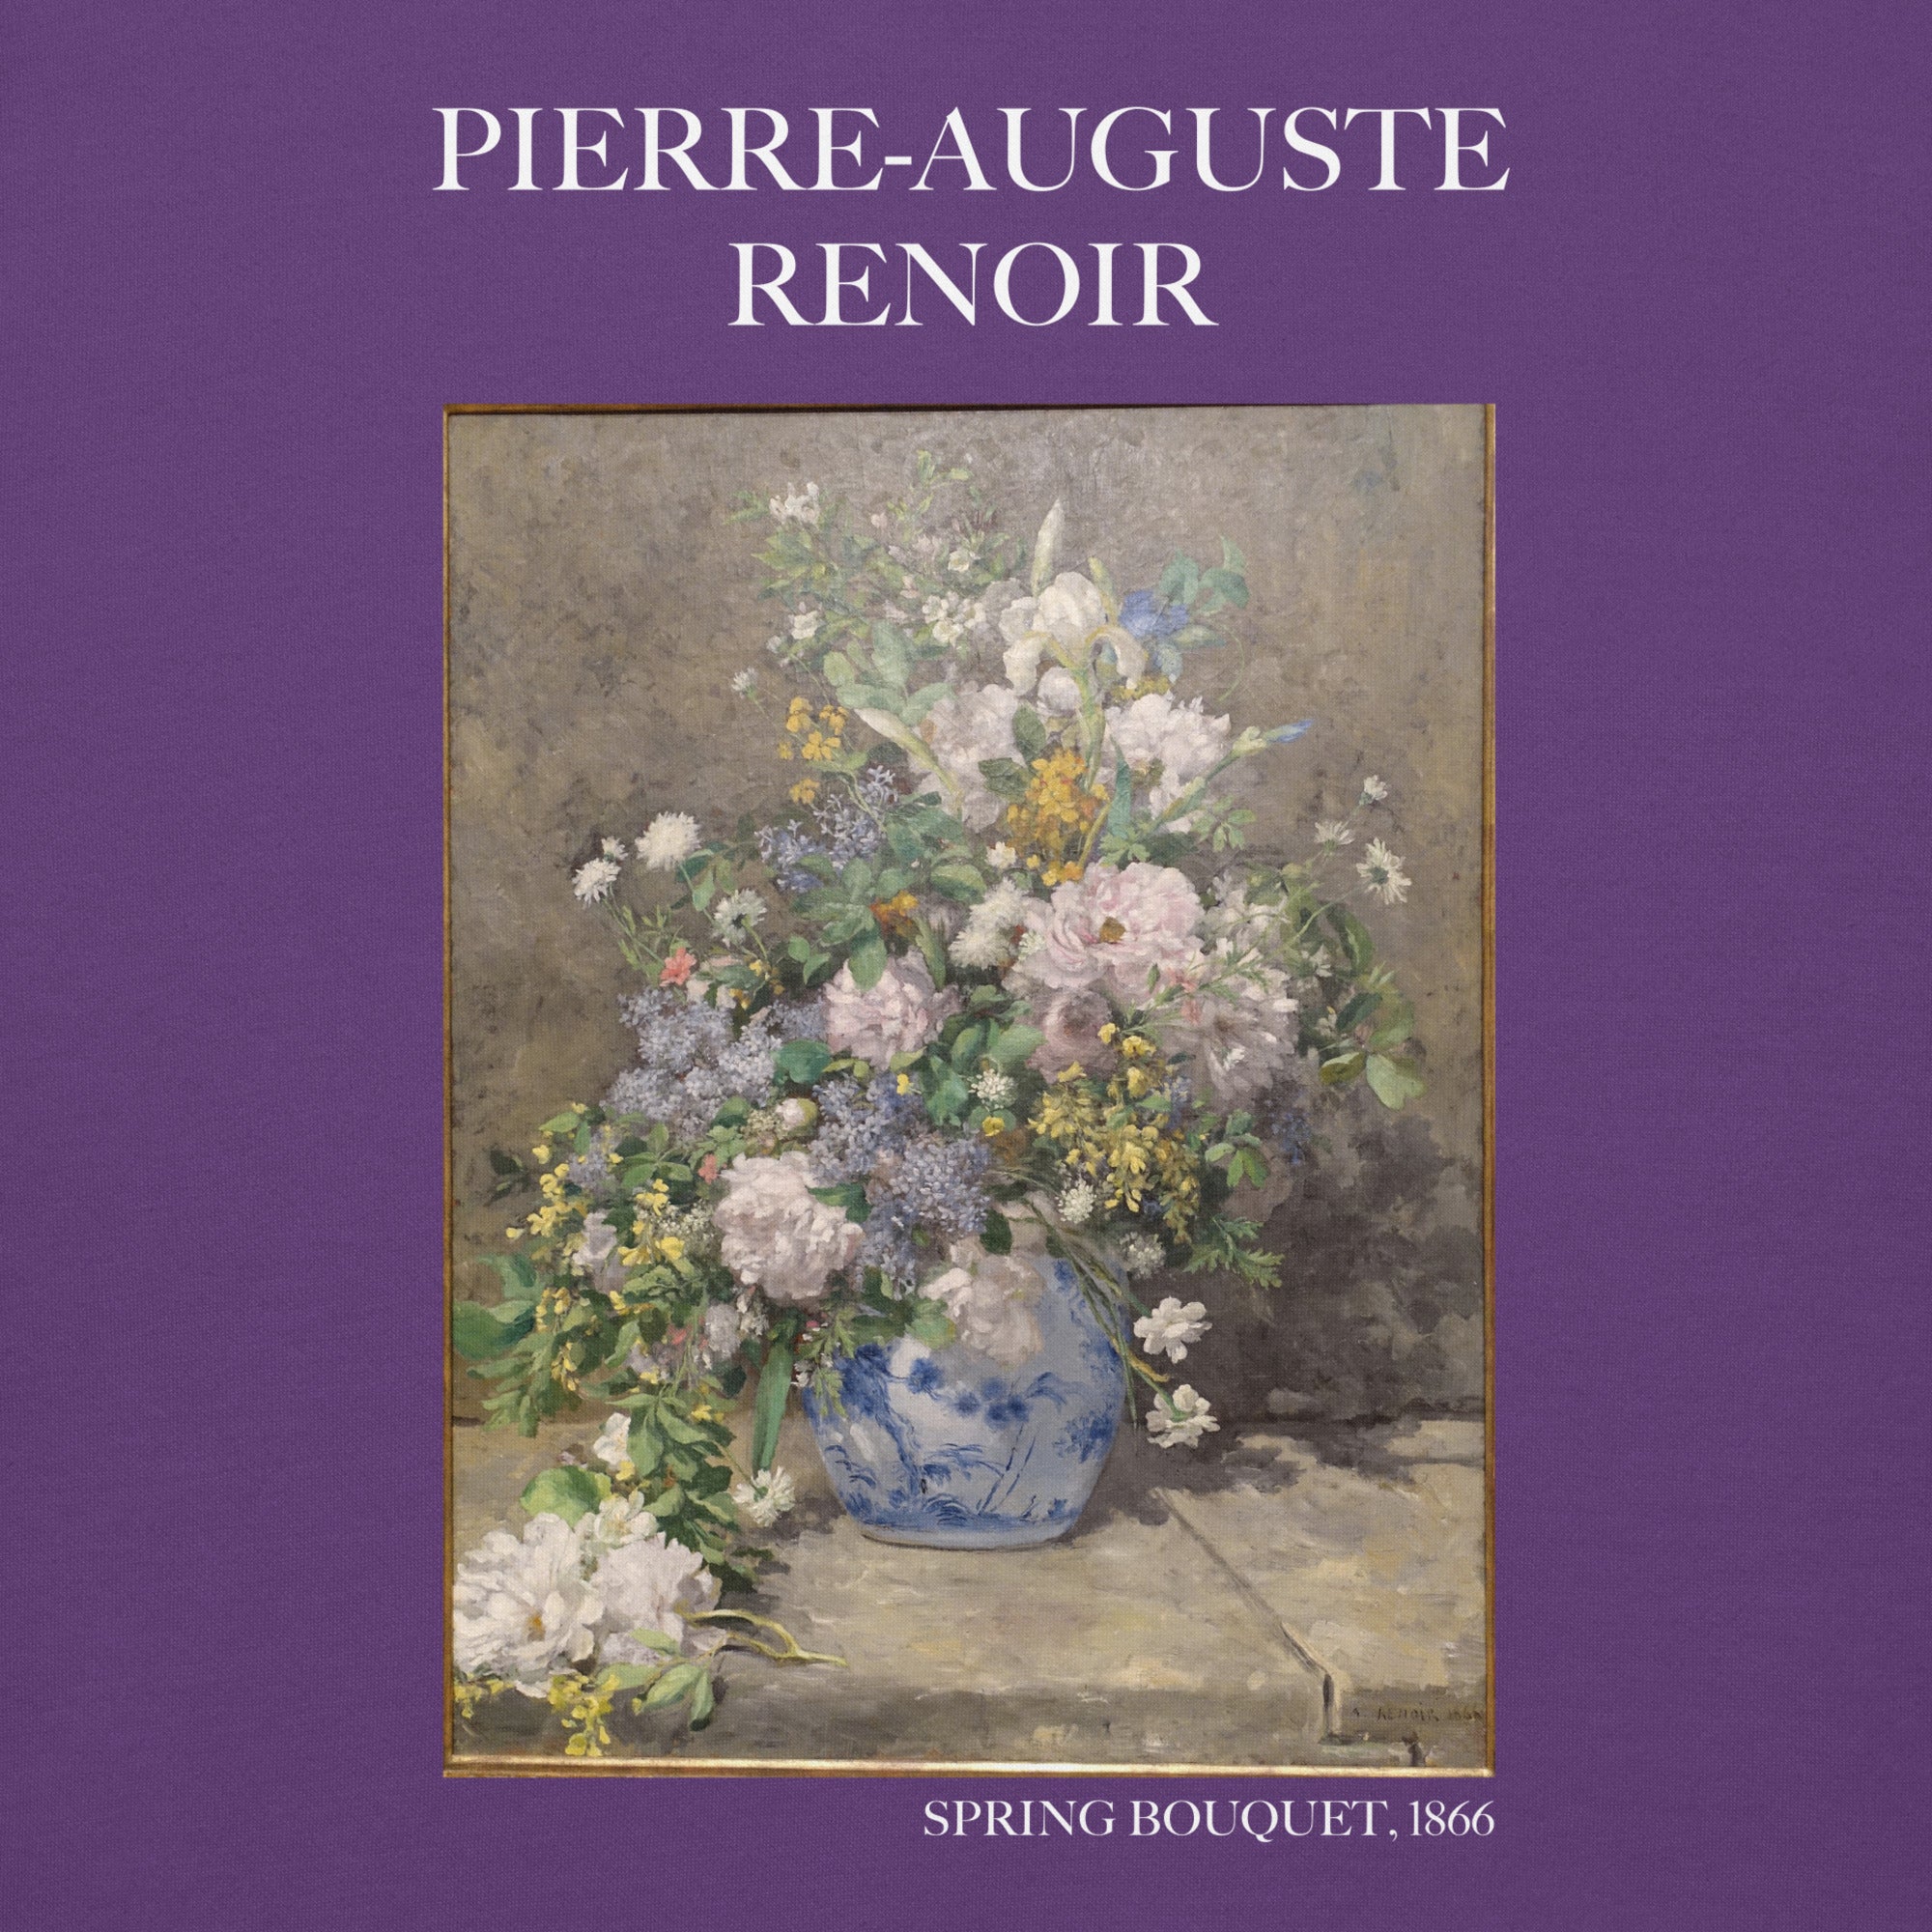 Pierre-Auguste Renoir 'Spring Bouquet' Famous Painting Hoodie | Unisex Premium Art Hoodie